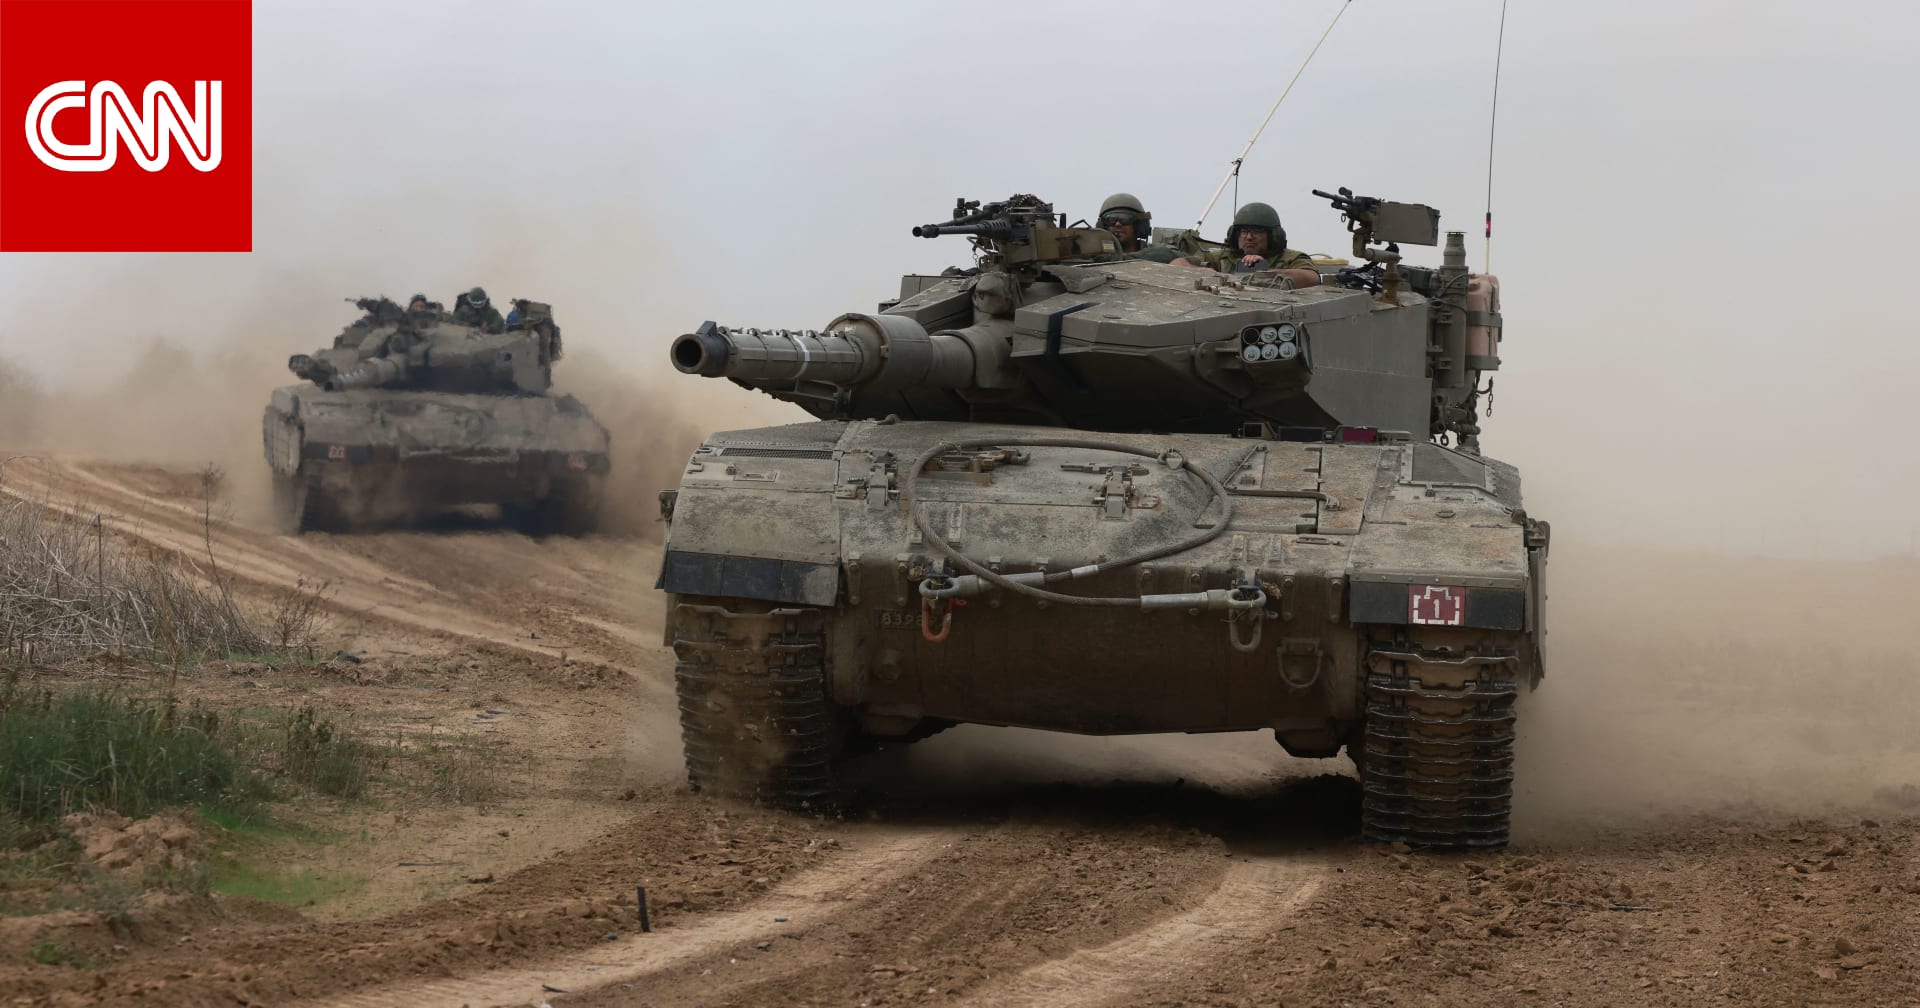 الجيش الإسرائيلي يعلن تعليق النشاطات العسكرية لأغراض إنسانية بالحي الإداري في رفح لـ4 ساعات